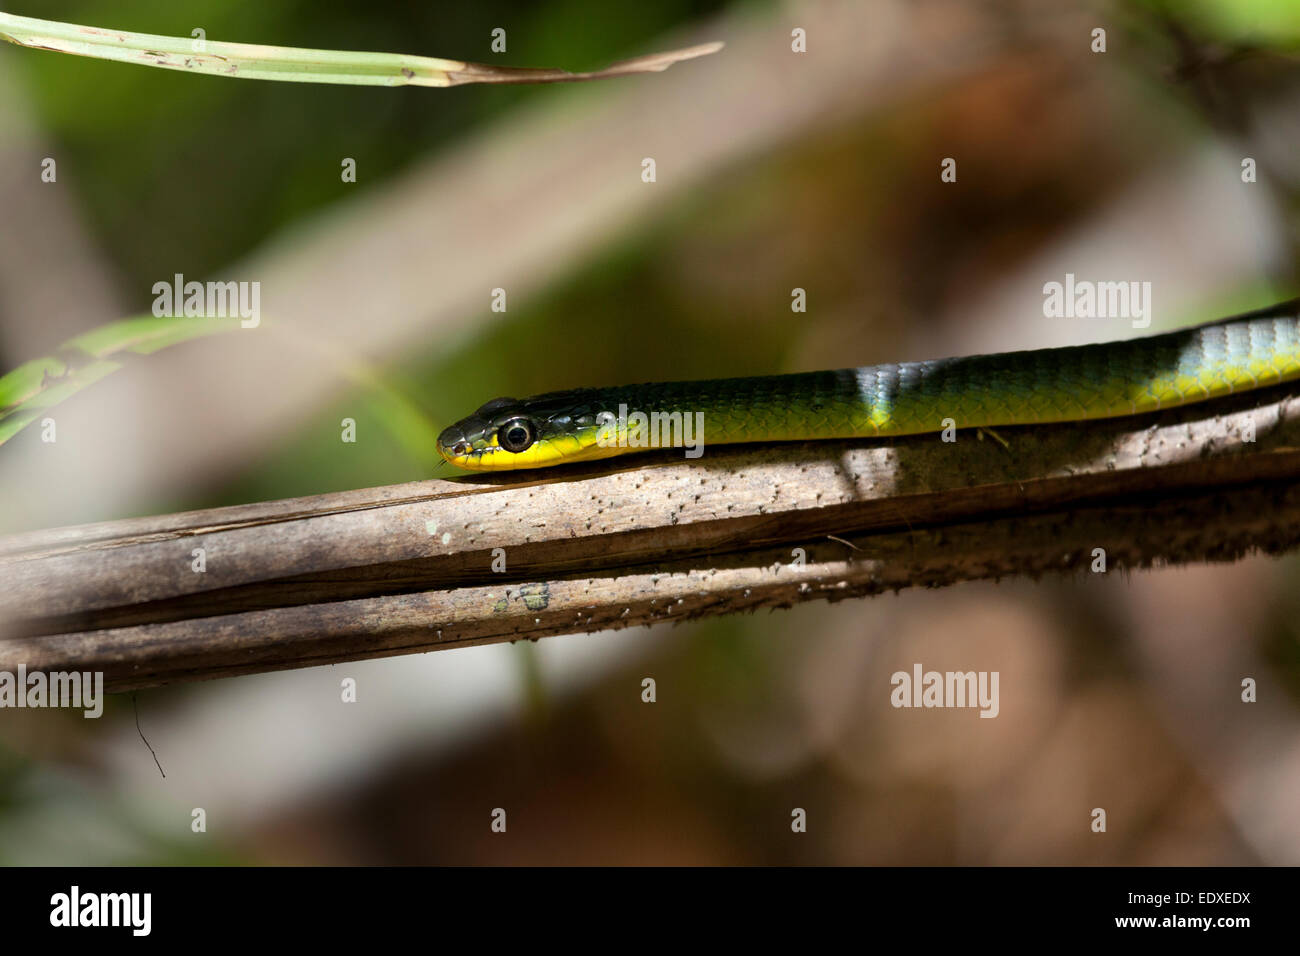 Serpent vert commun ou arbre serpent dans Eugenella National Park, Australie Banque D'Images